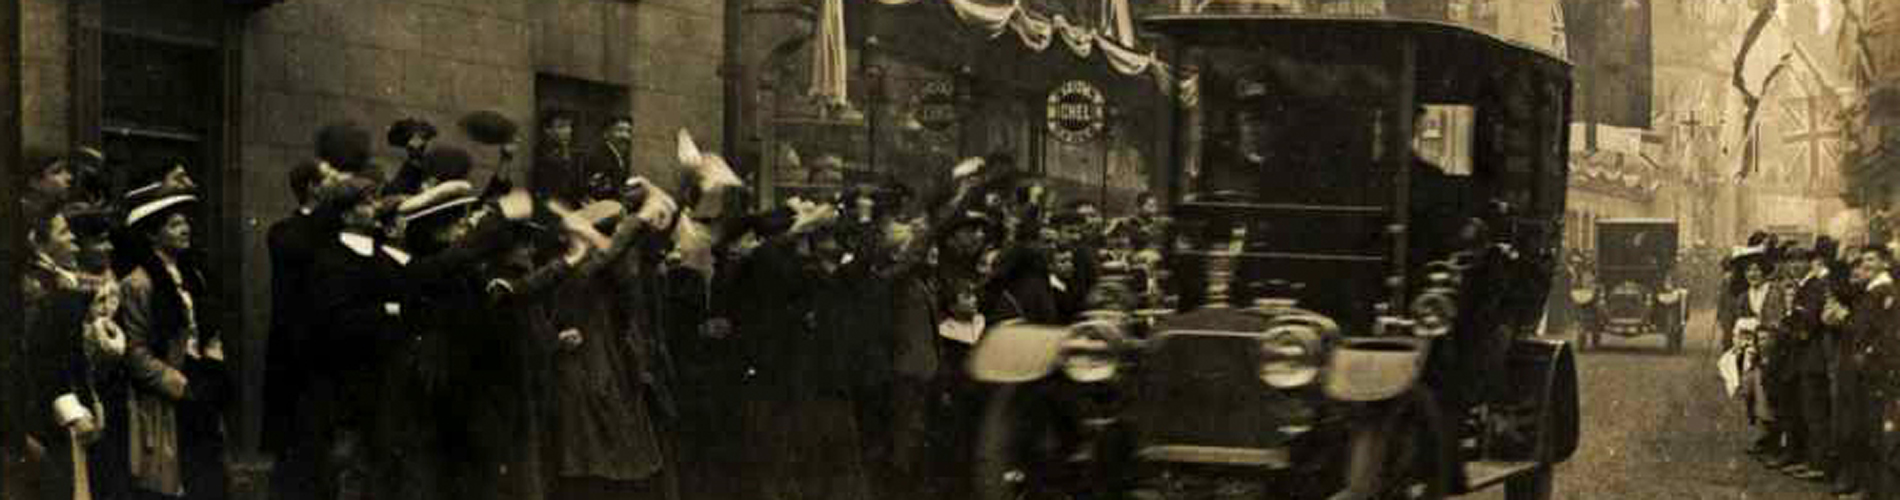 King Edward VII visit to town 1904